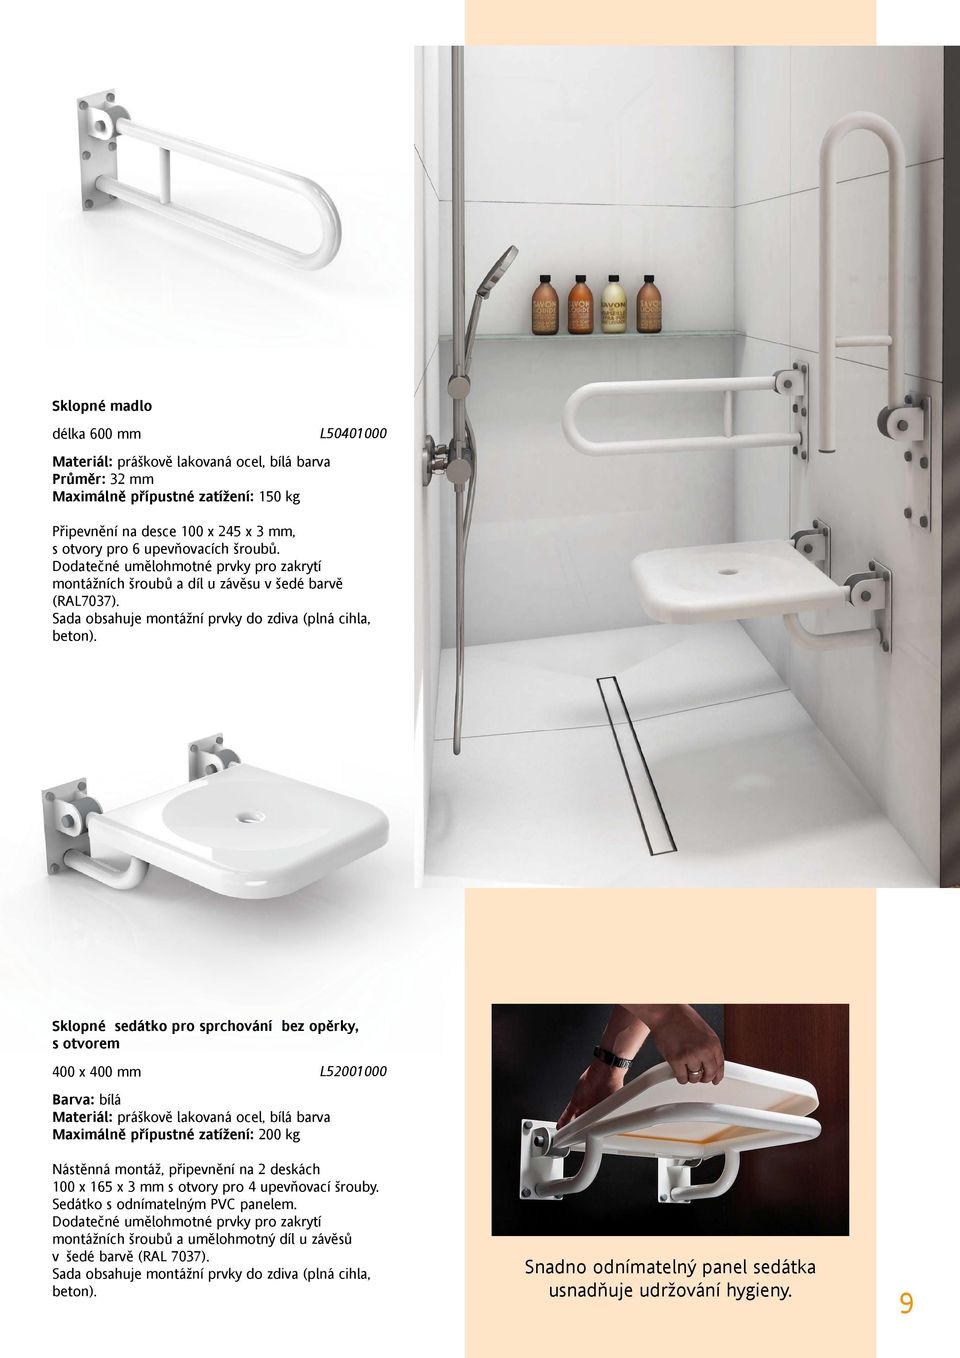 Sklopné sedátko pro sprchování bez opěrky, s otvorem 400 x 400 mm L52001000 Barva: bílá Materiál: práškově lakovaná ocel, bílá barva Maximálně přípustné